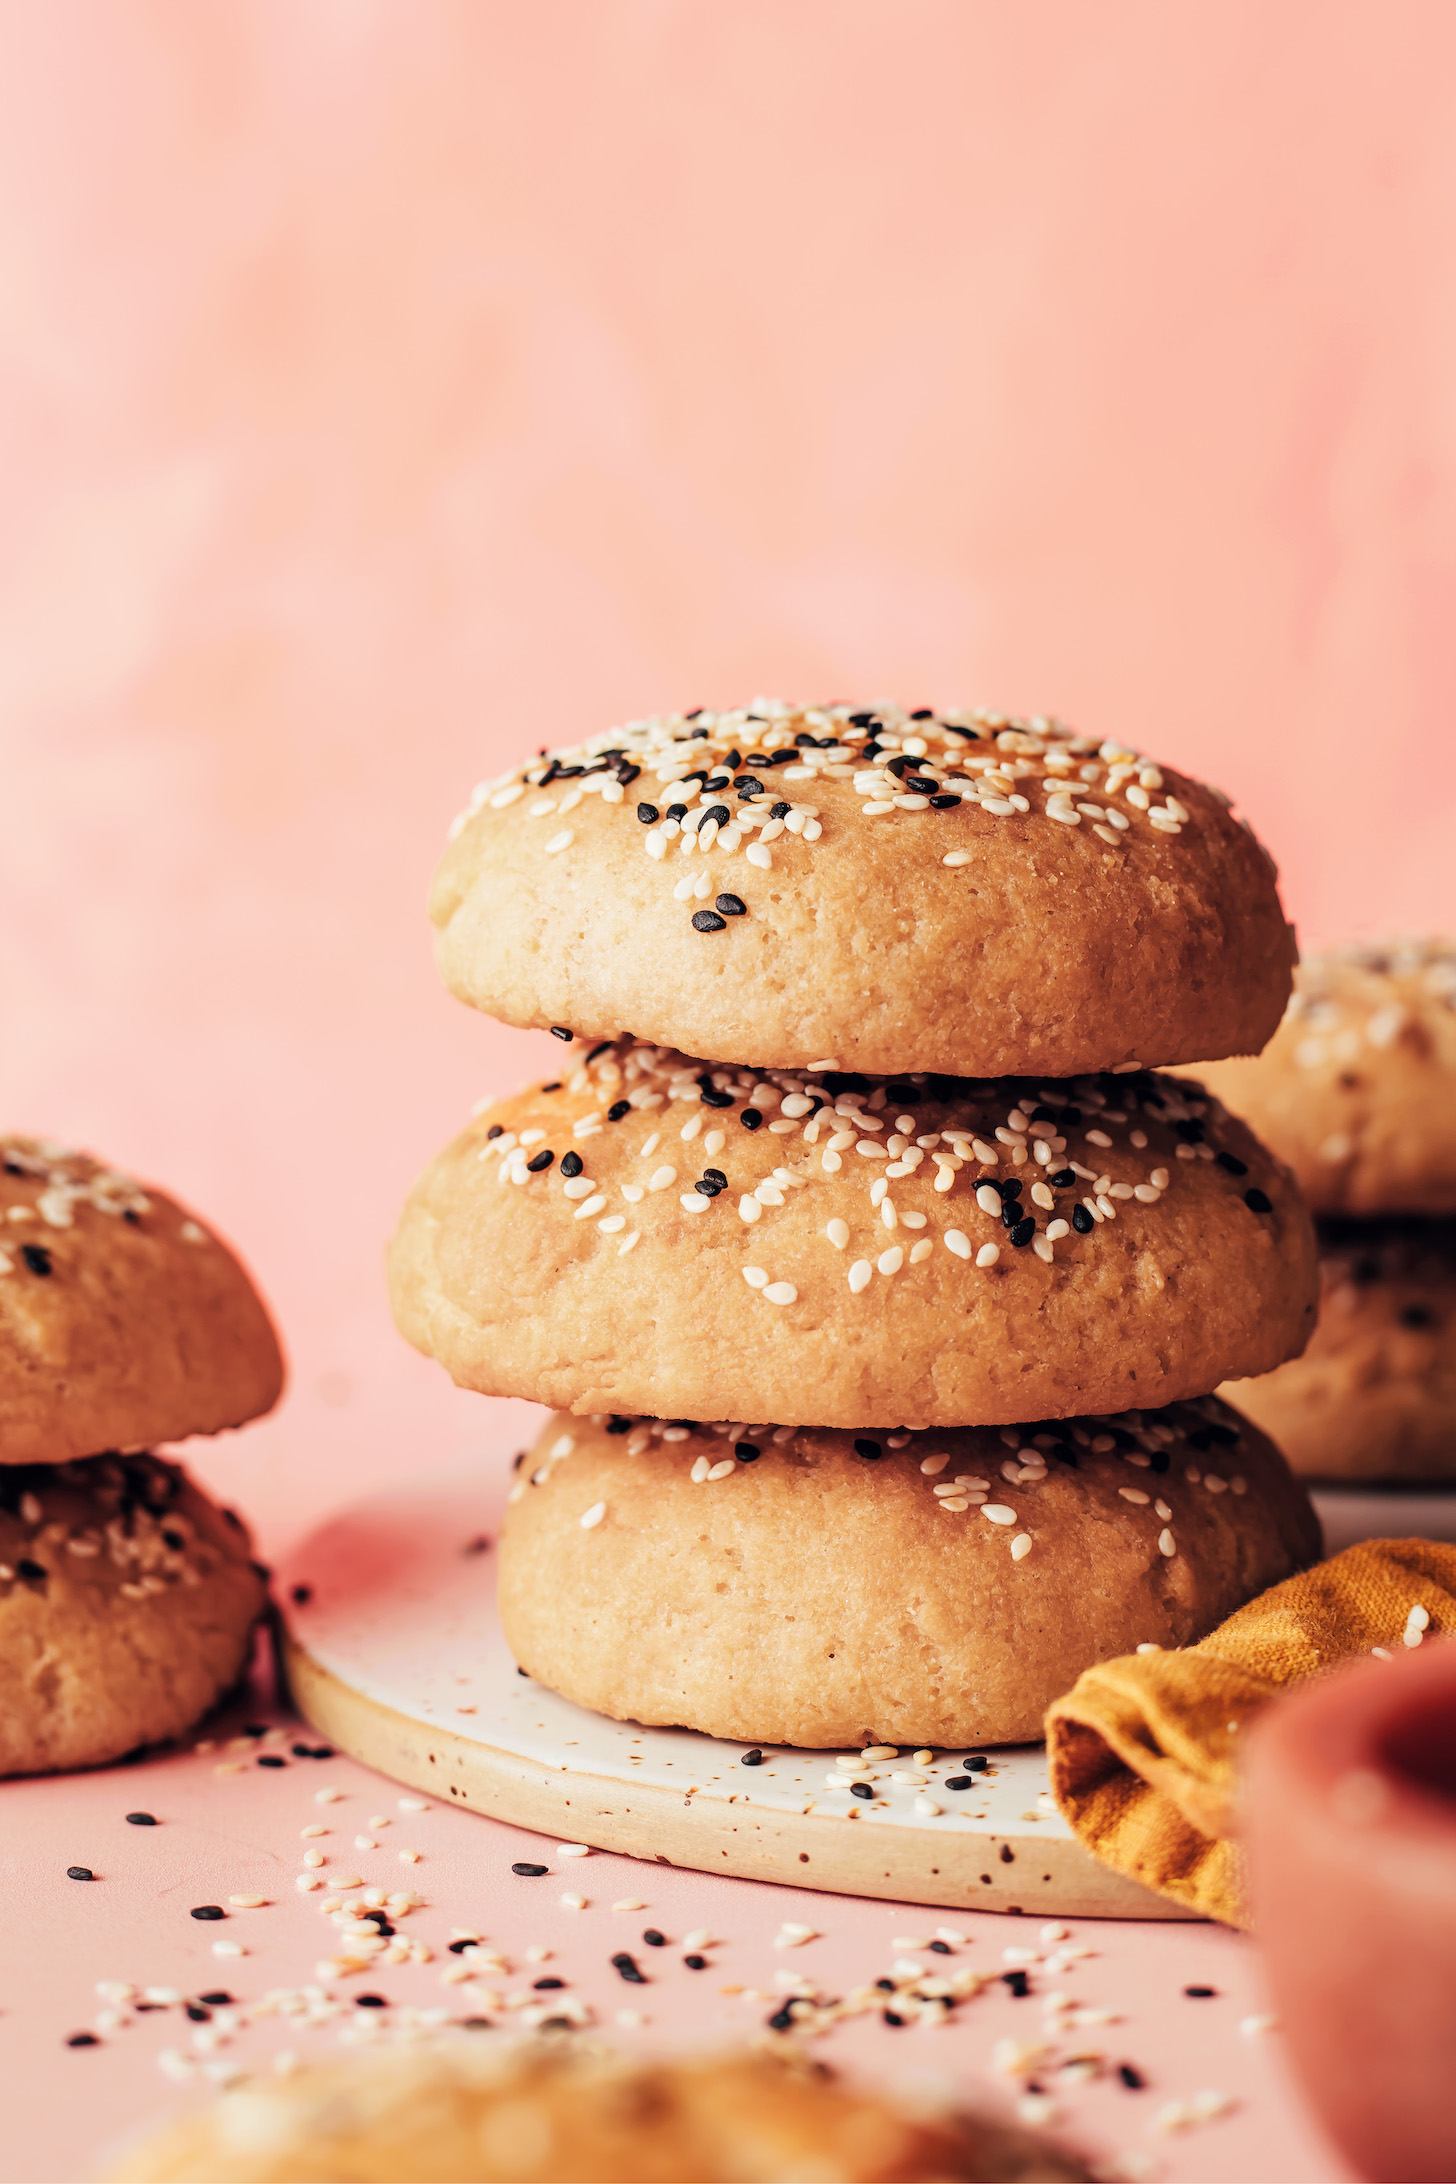 Stacks of homemade vegan gluten-free hamburger buns